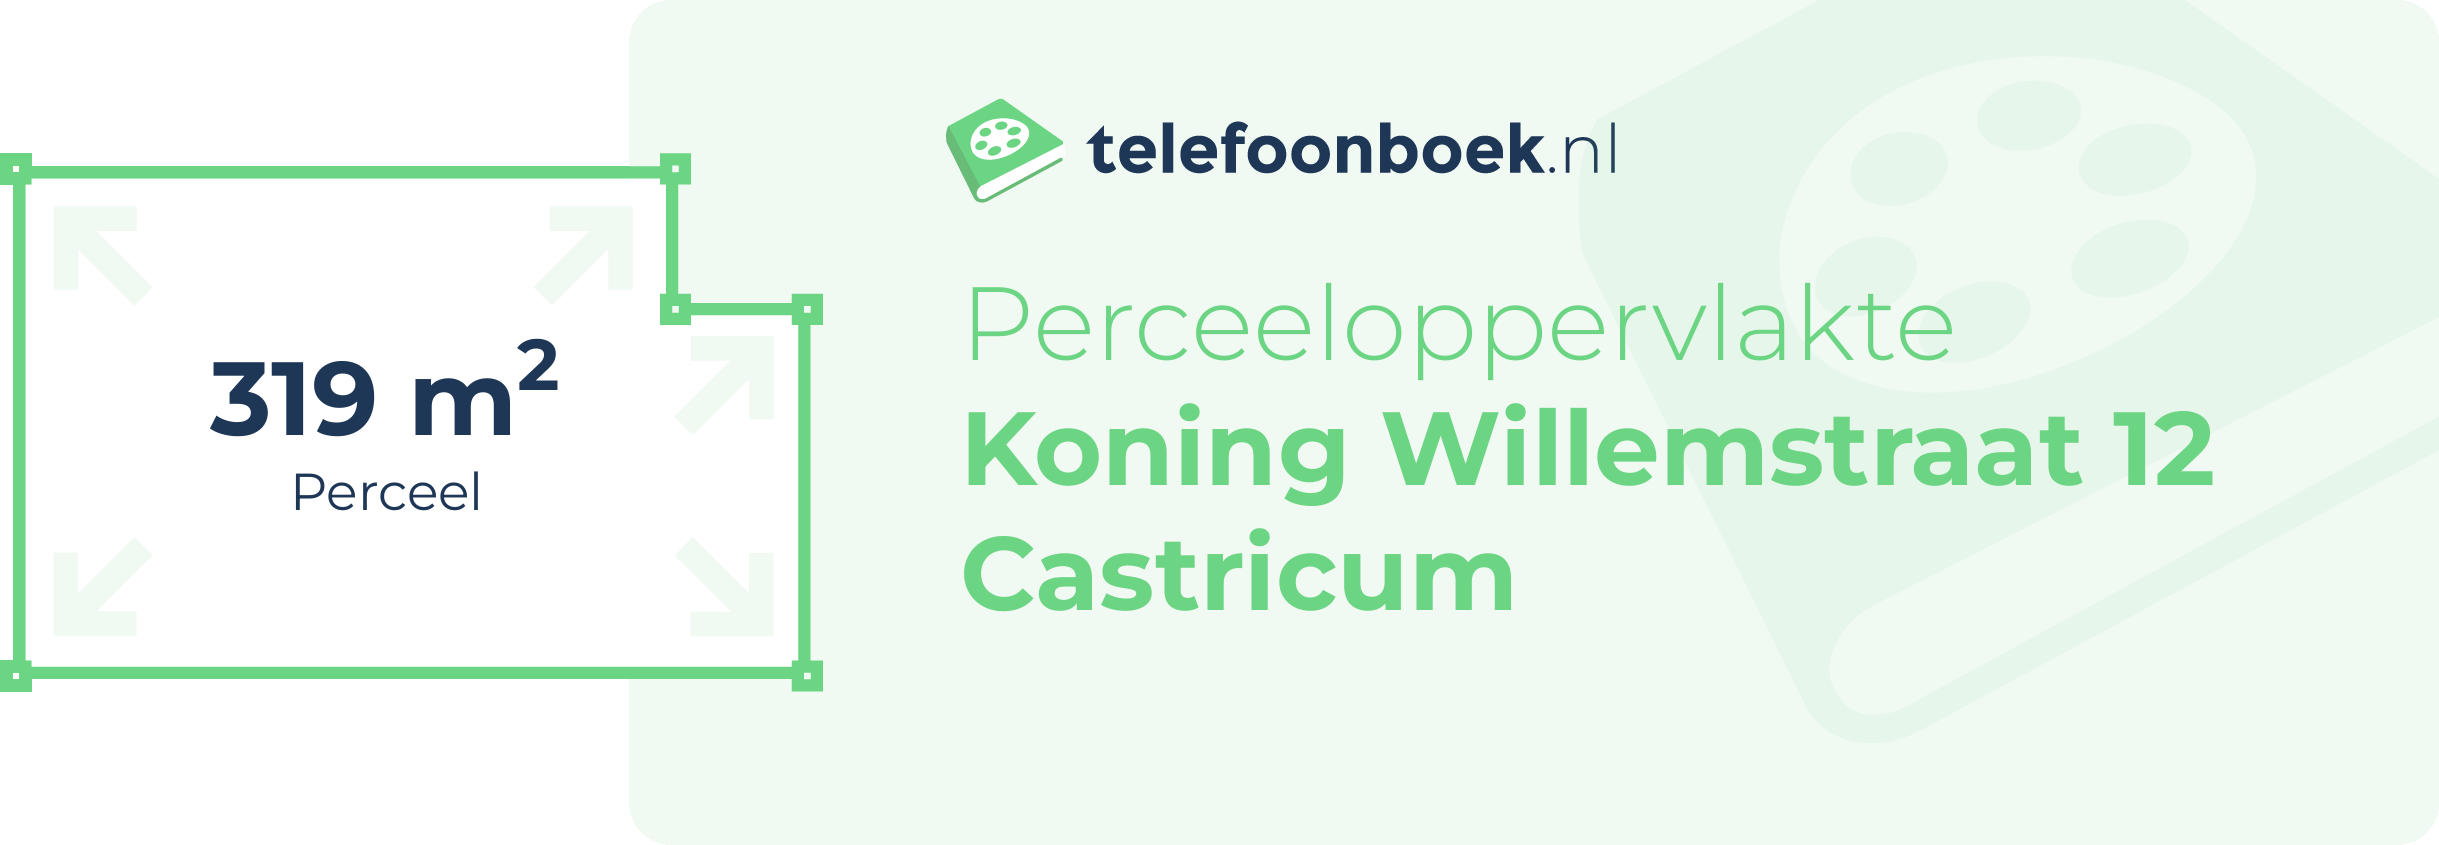 Perceeloppervlakte Koning Willemstraat 12 Castricum